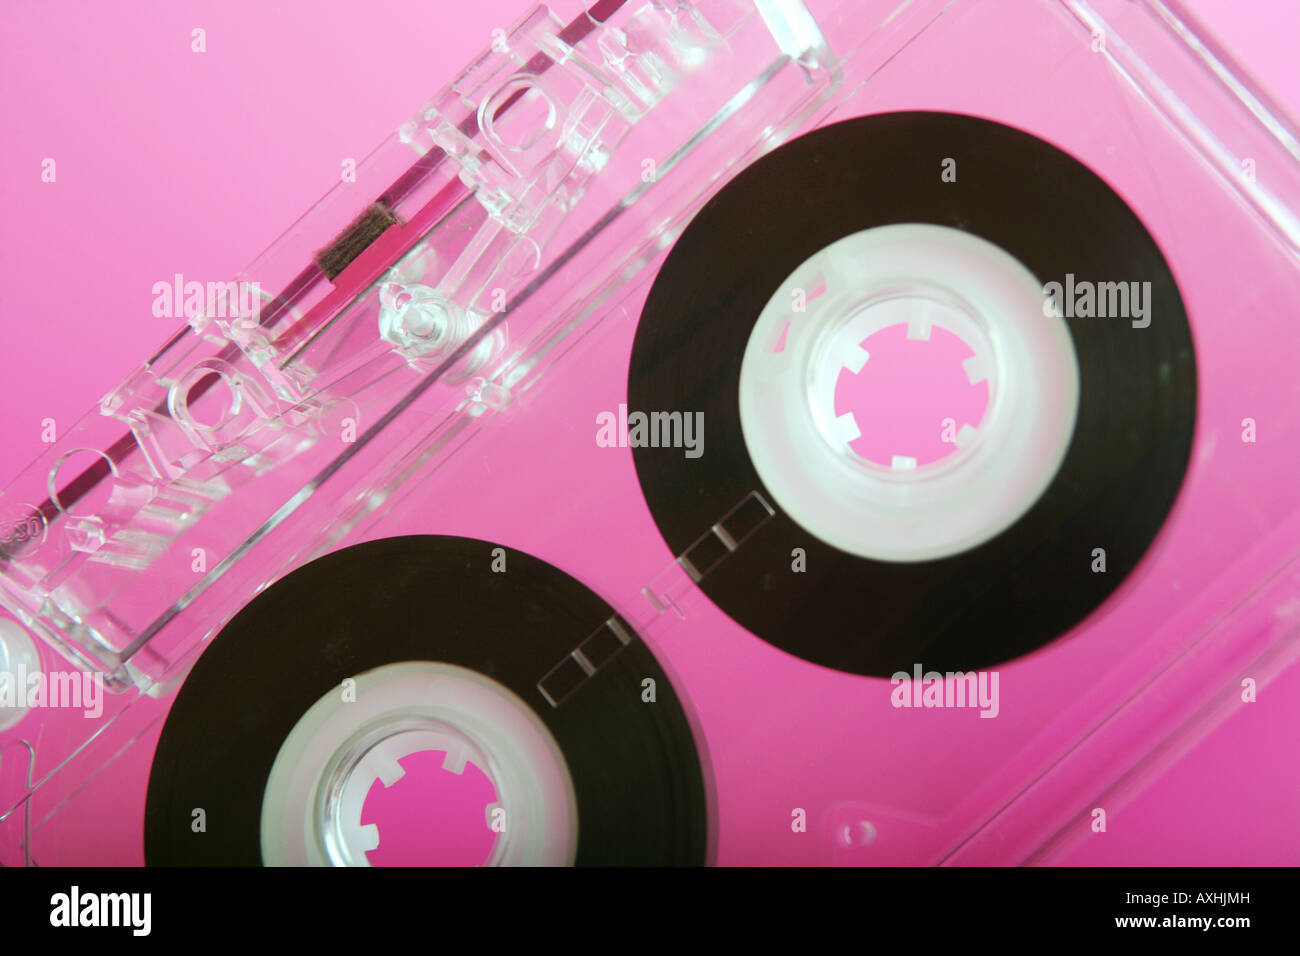 Gros plan d'une cassette audio transparent sur fond rose. Banque D'Images